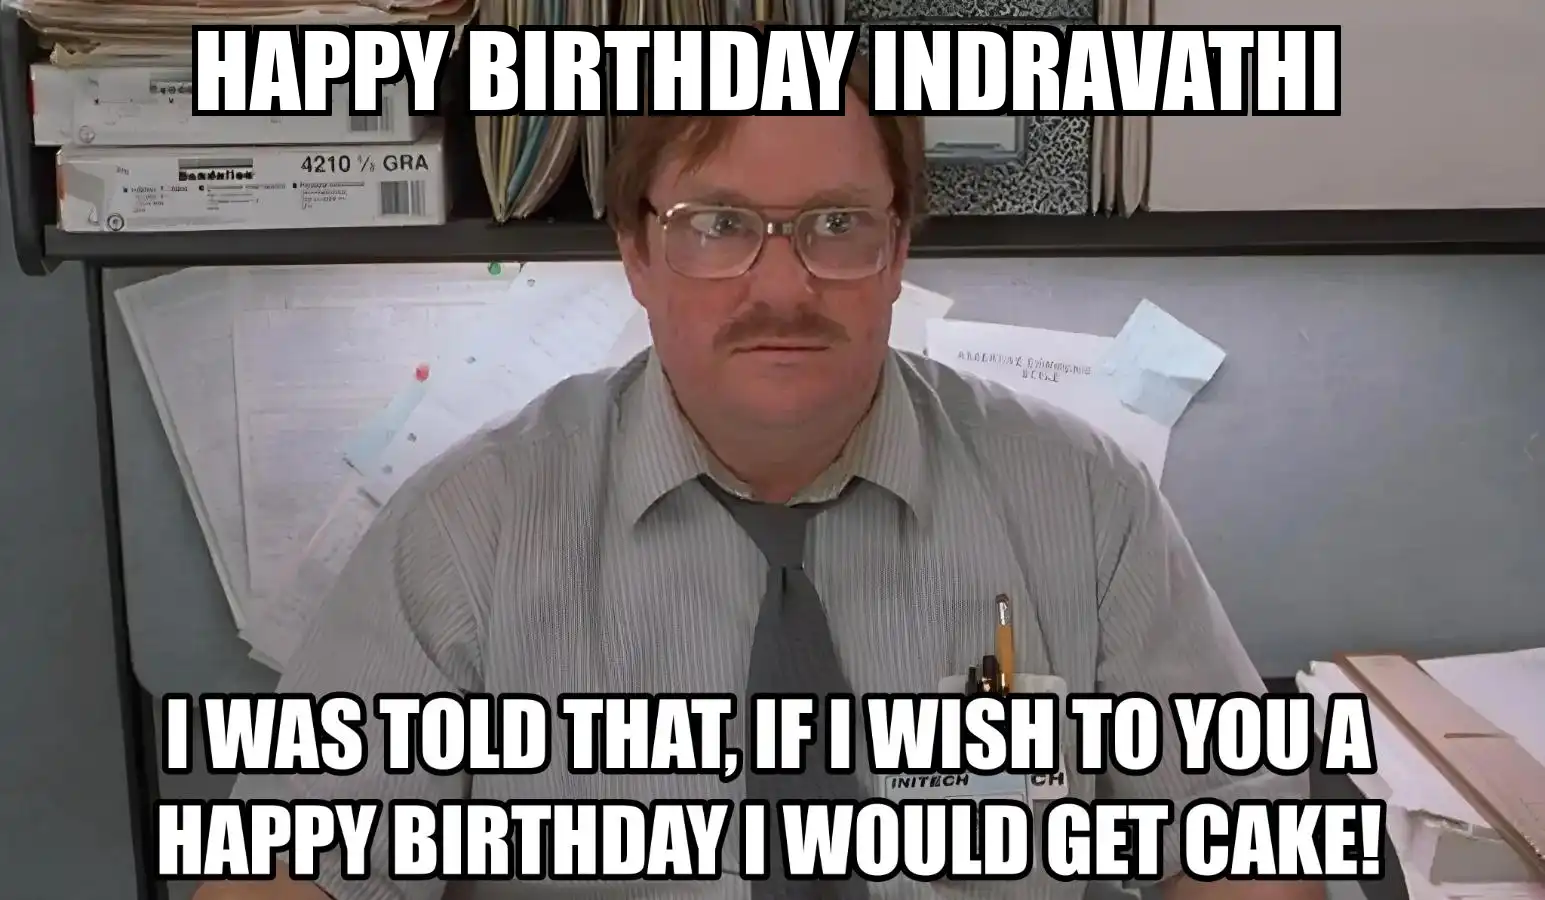 Happy Birthday Indravathi I Would Get A Cake Meme